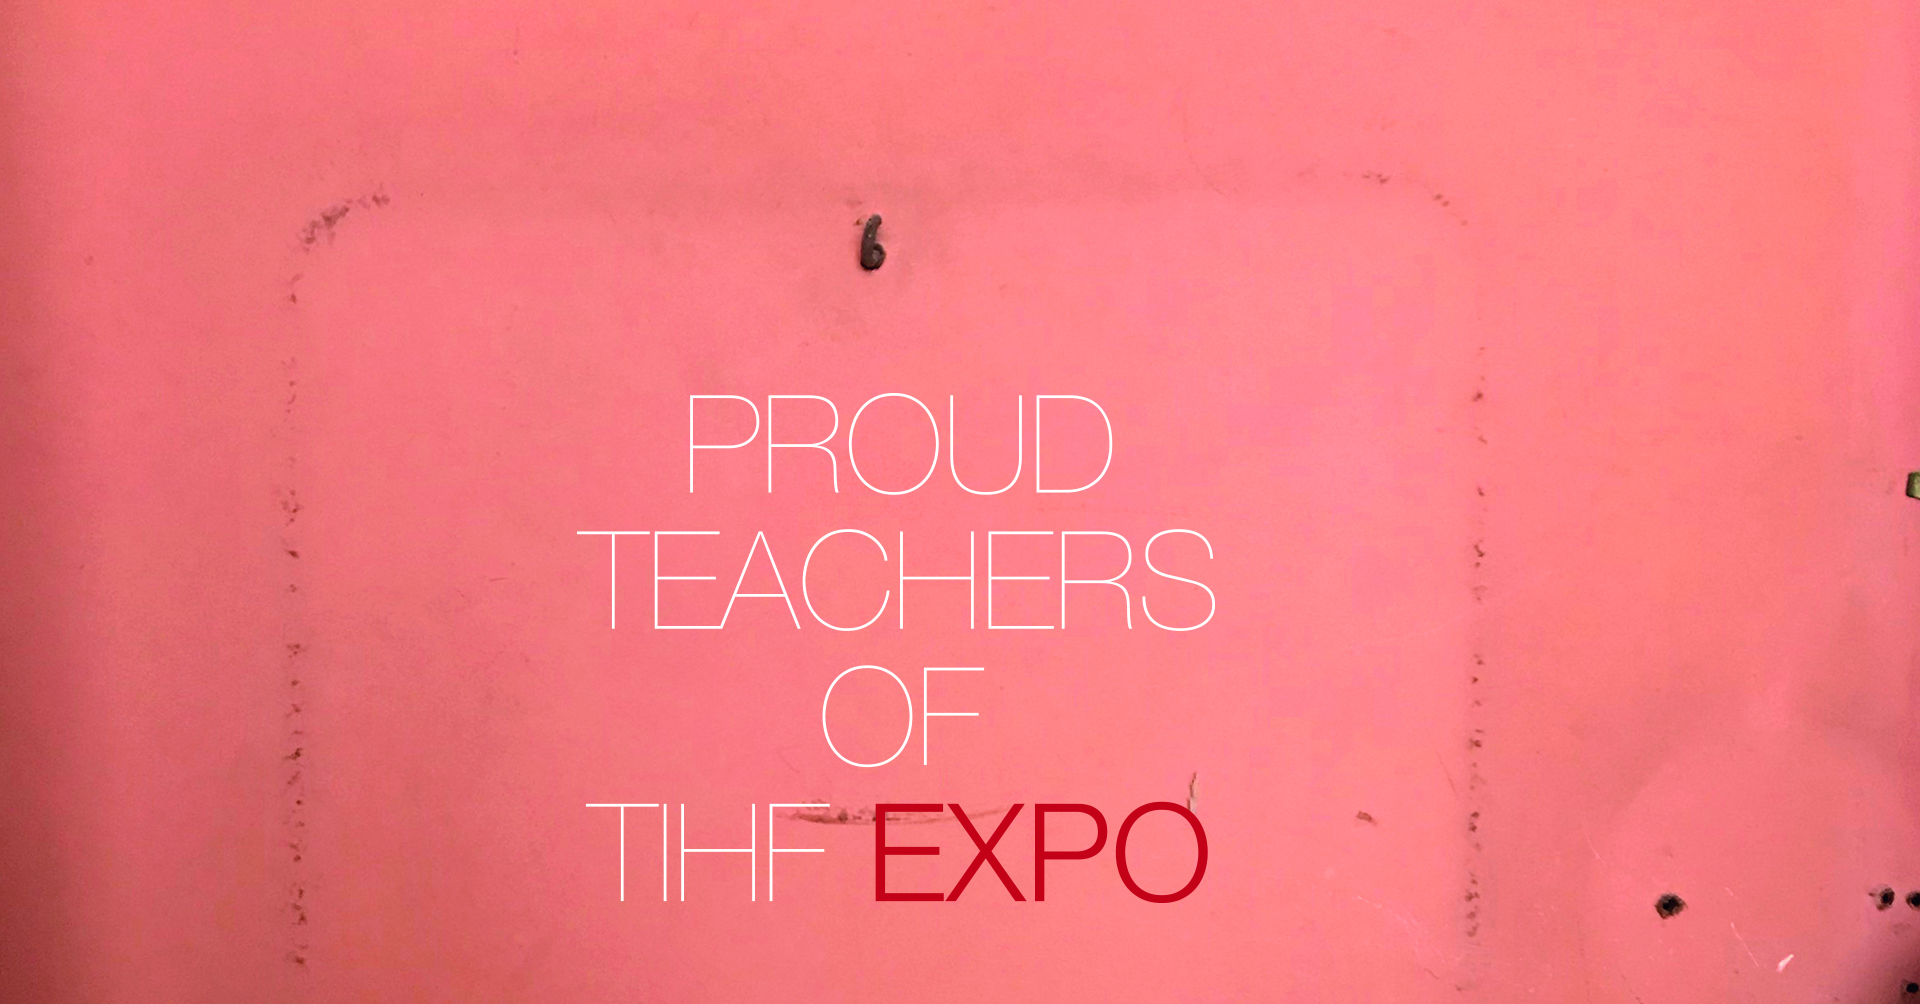 Proud teachers TIHF EXPO